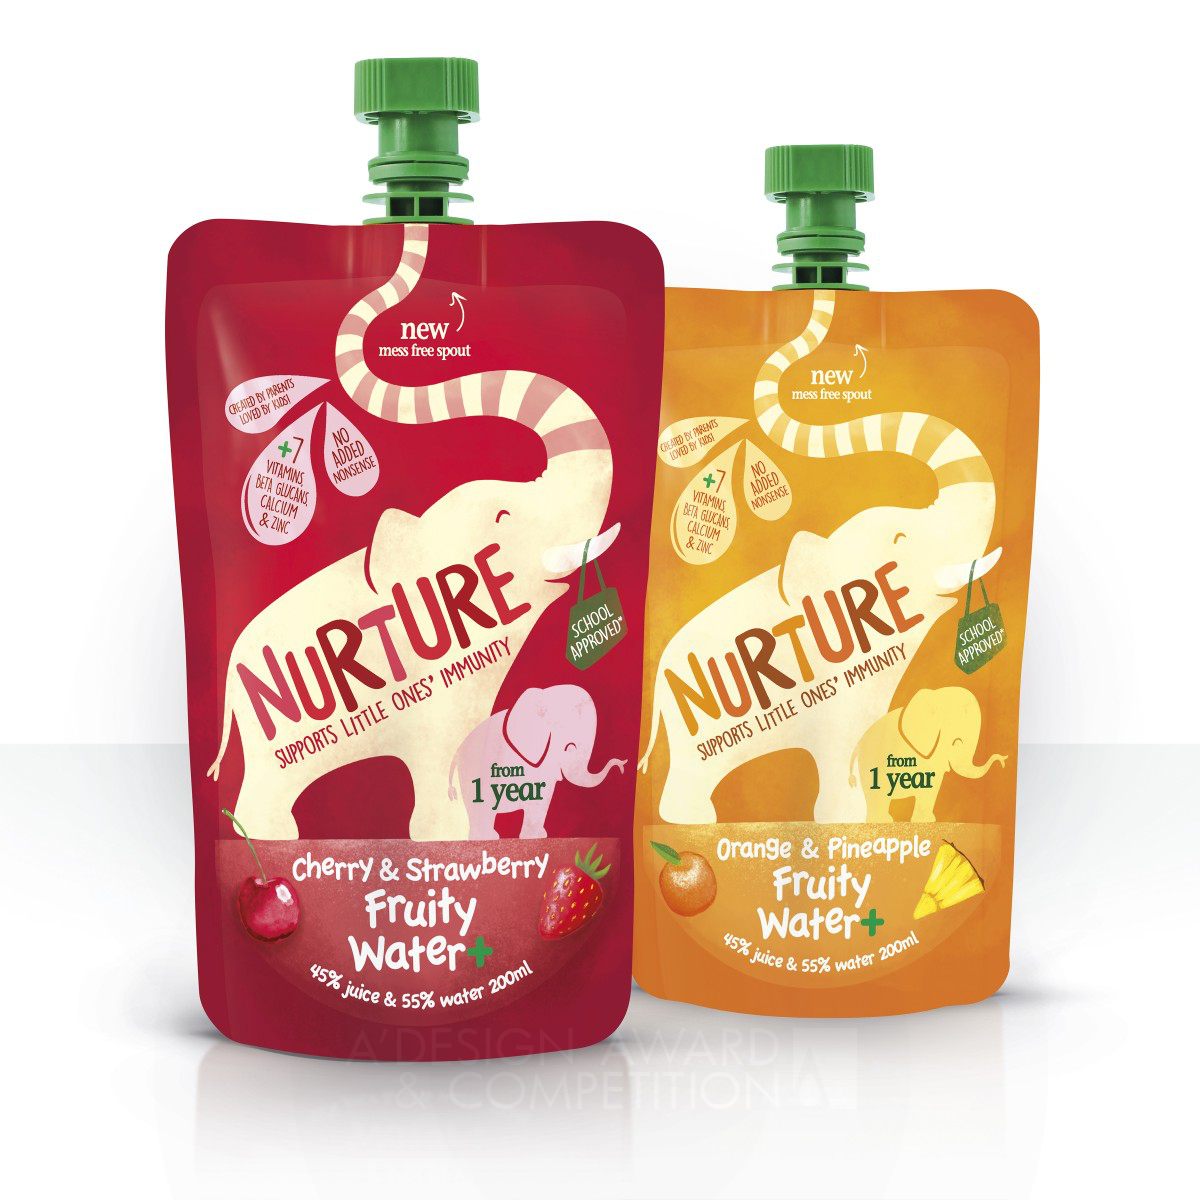 Nurture Drinks packaging by Springetts Brand Design